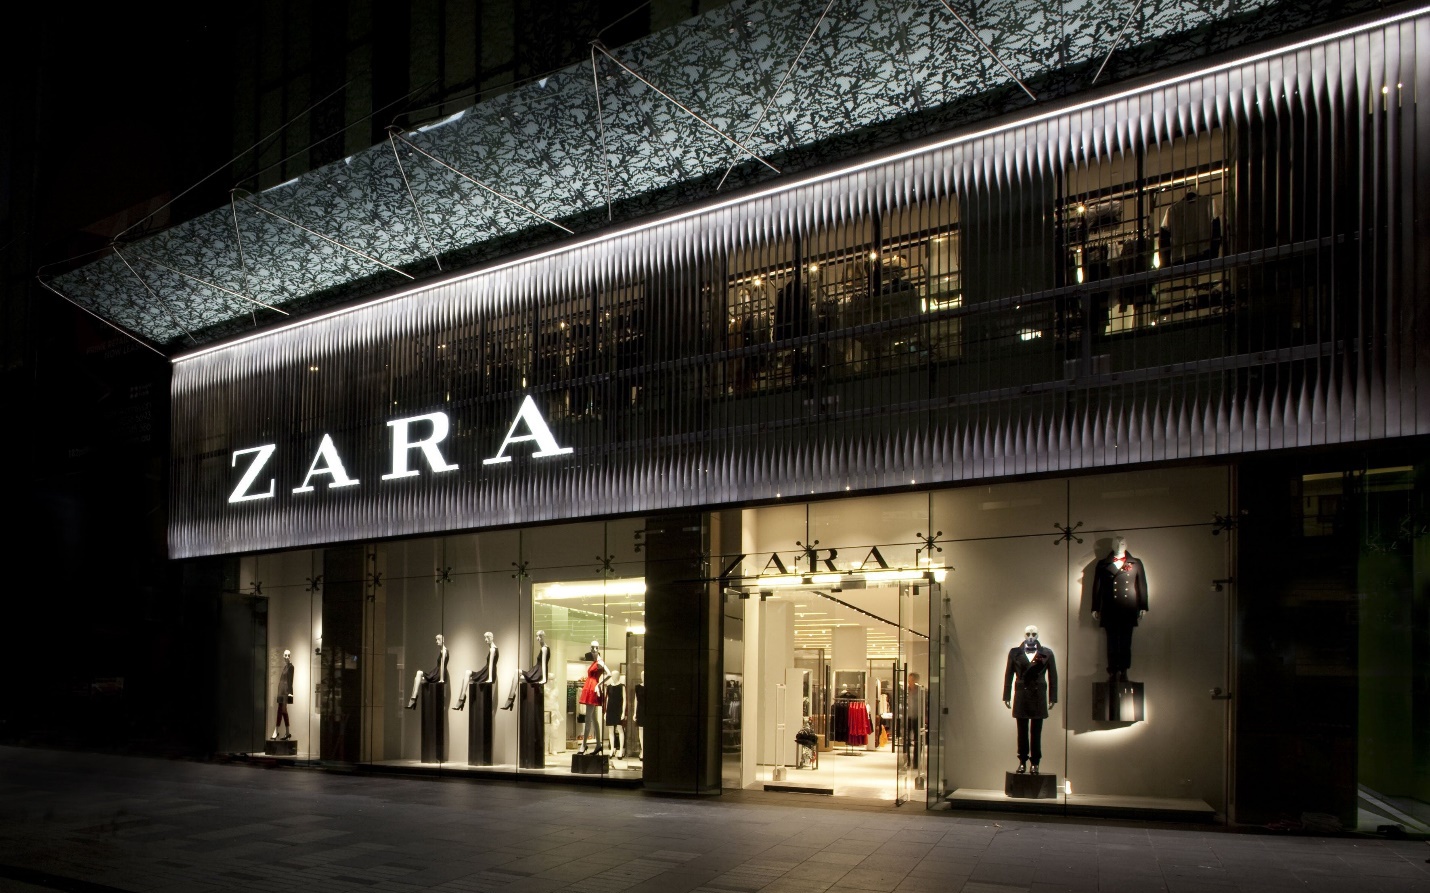 Bí mật đưa Zara từ số vốn 30 euro lên thành đế chế thời trang toàn cầu